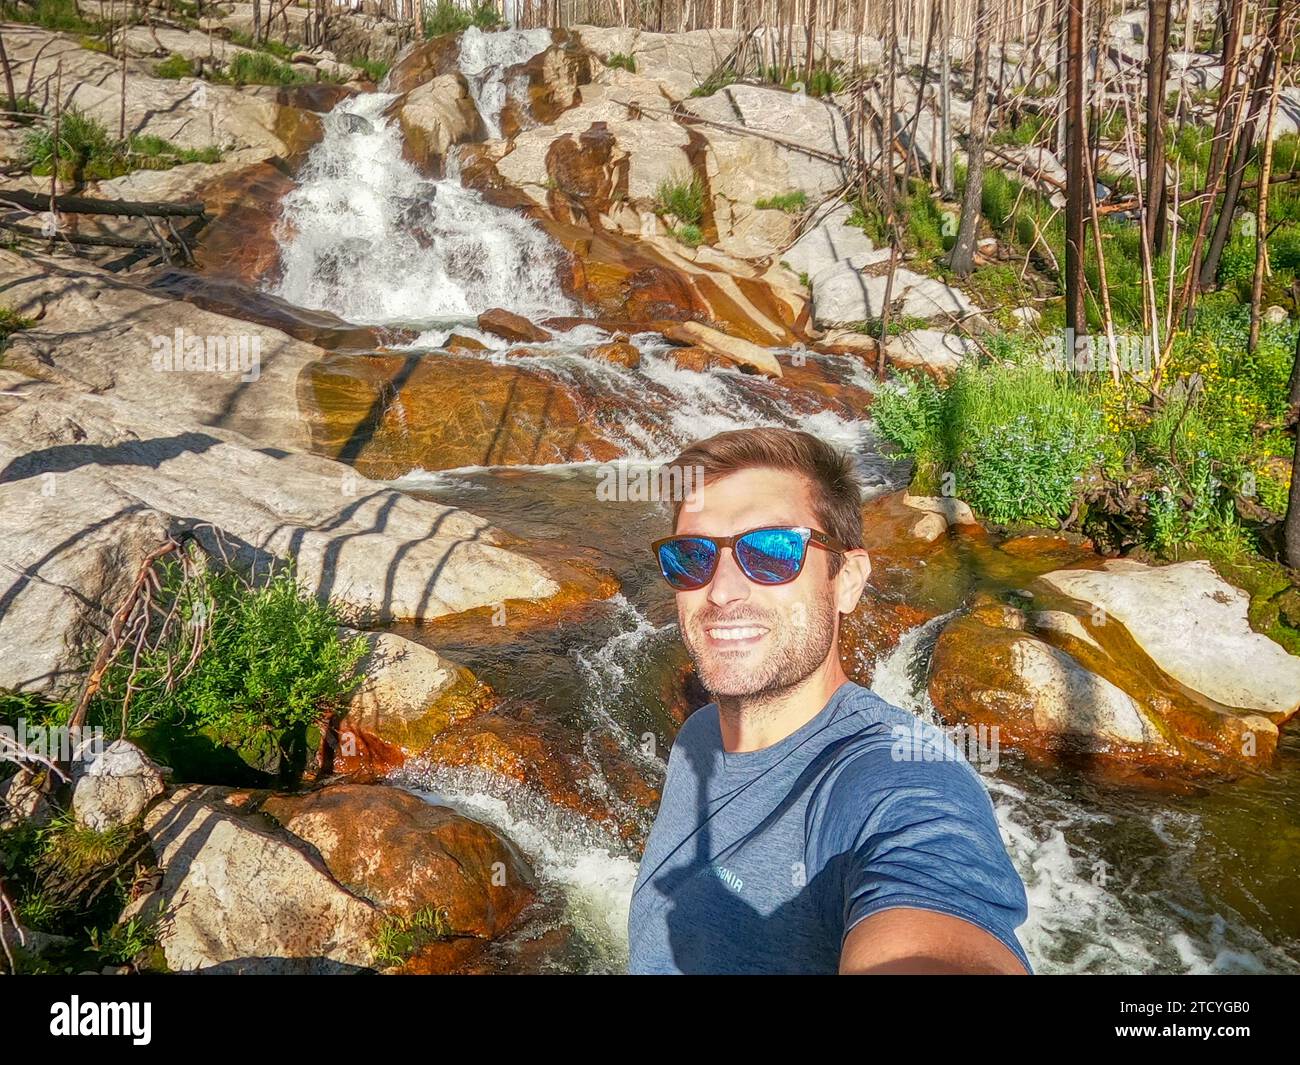 Joyeux randonneur prend un selfie avec une chute d'eau frappante dans la forêt régénérante du parc national des montagnes Rocheuses. Banque D'Images